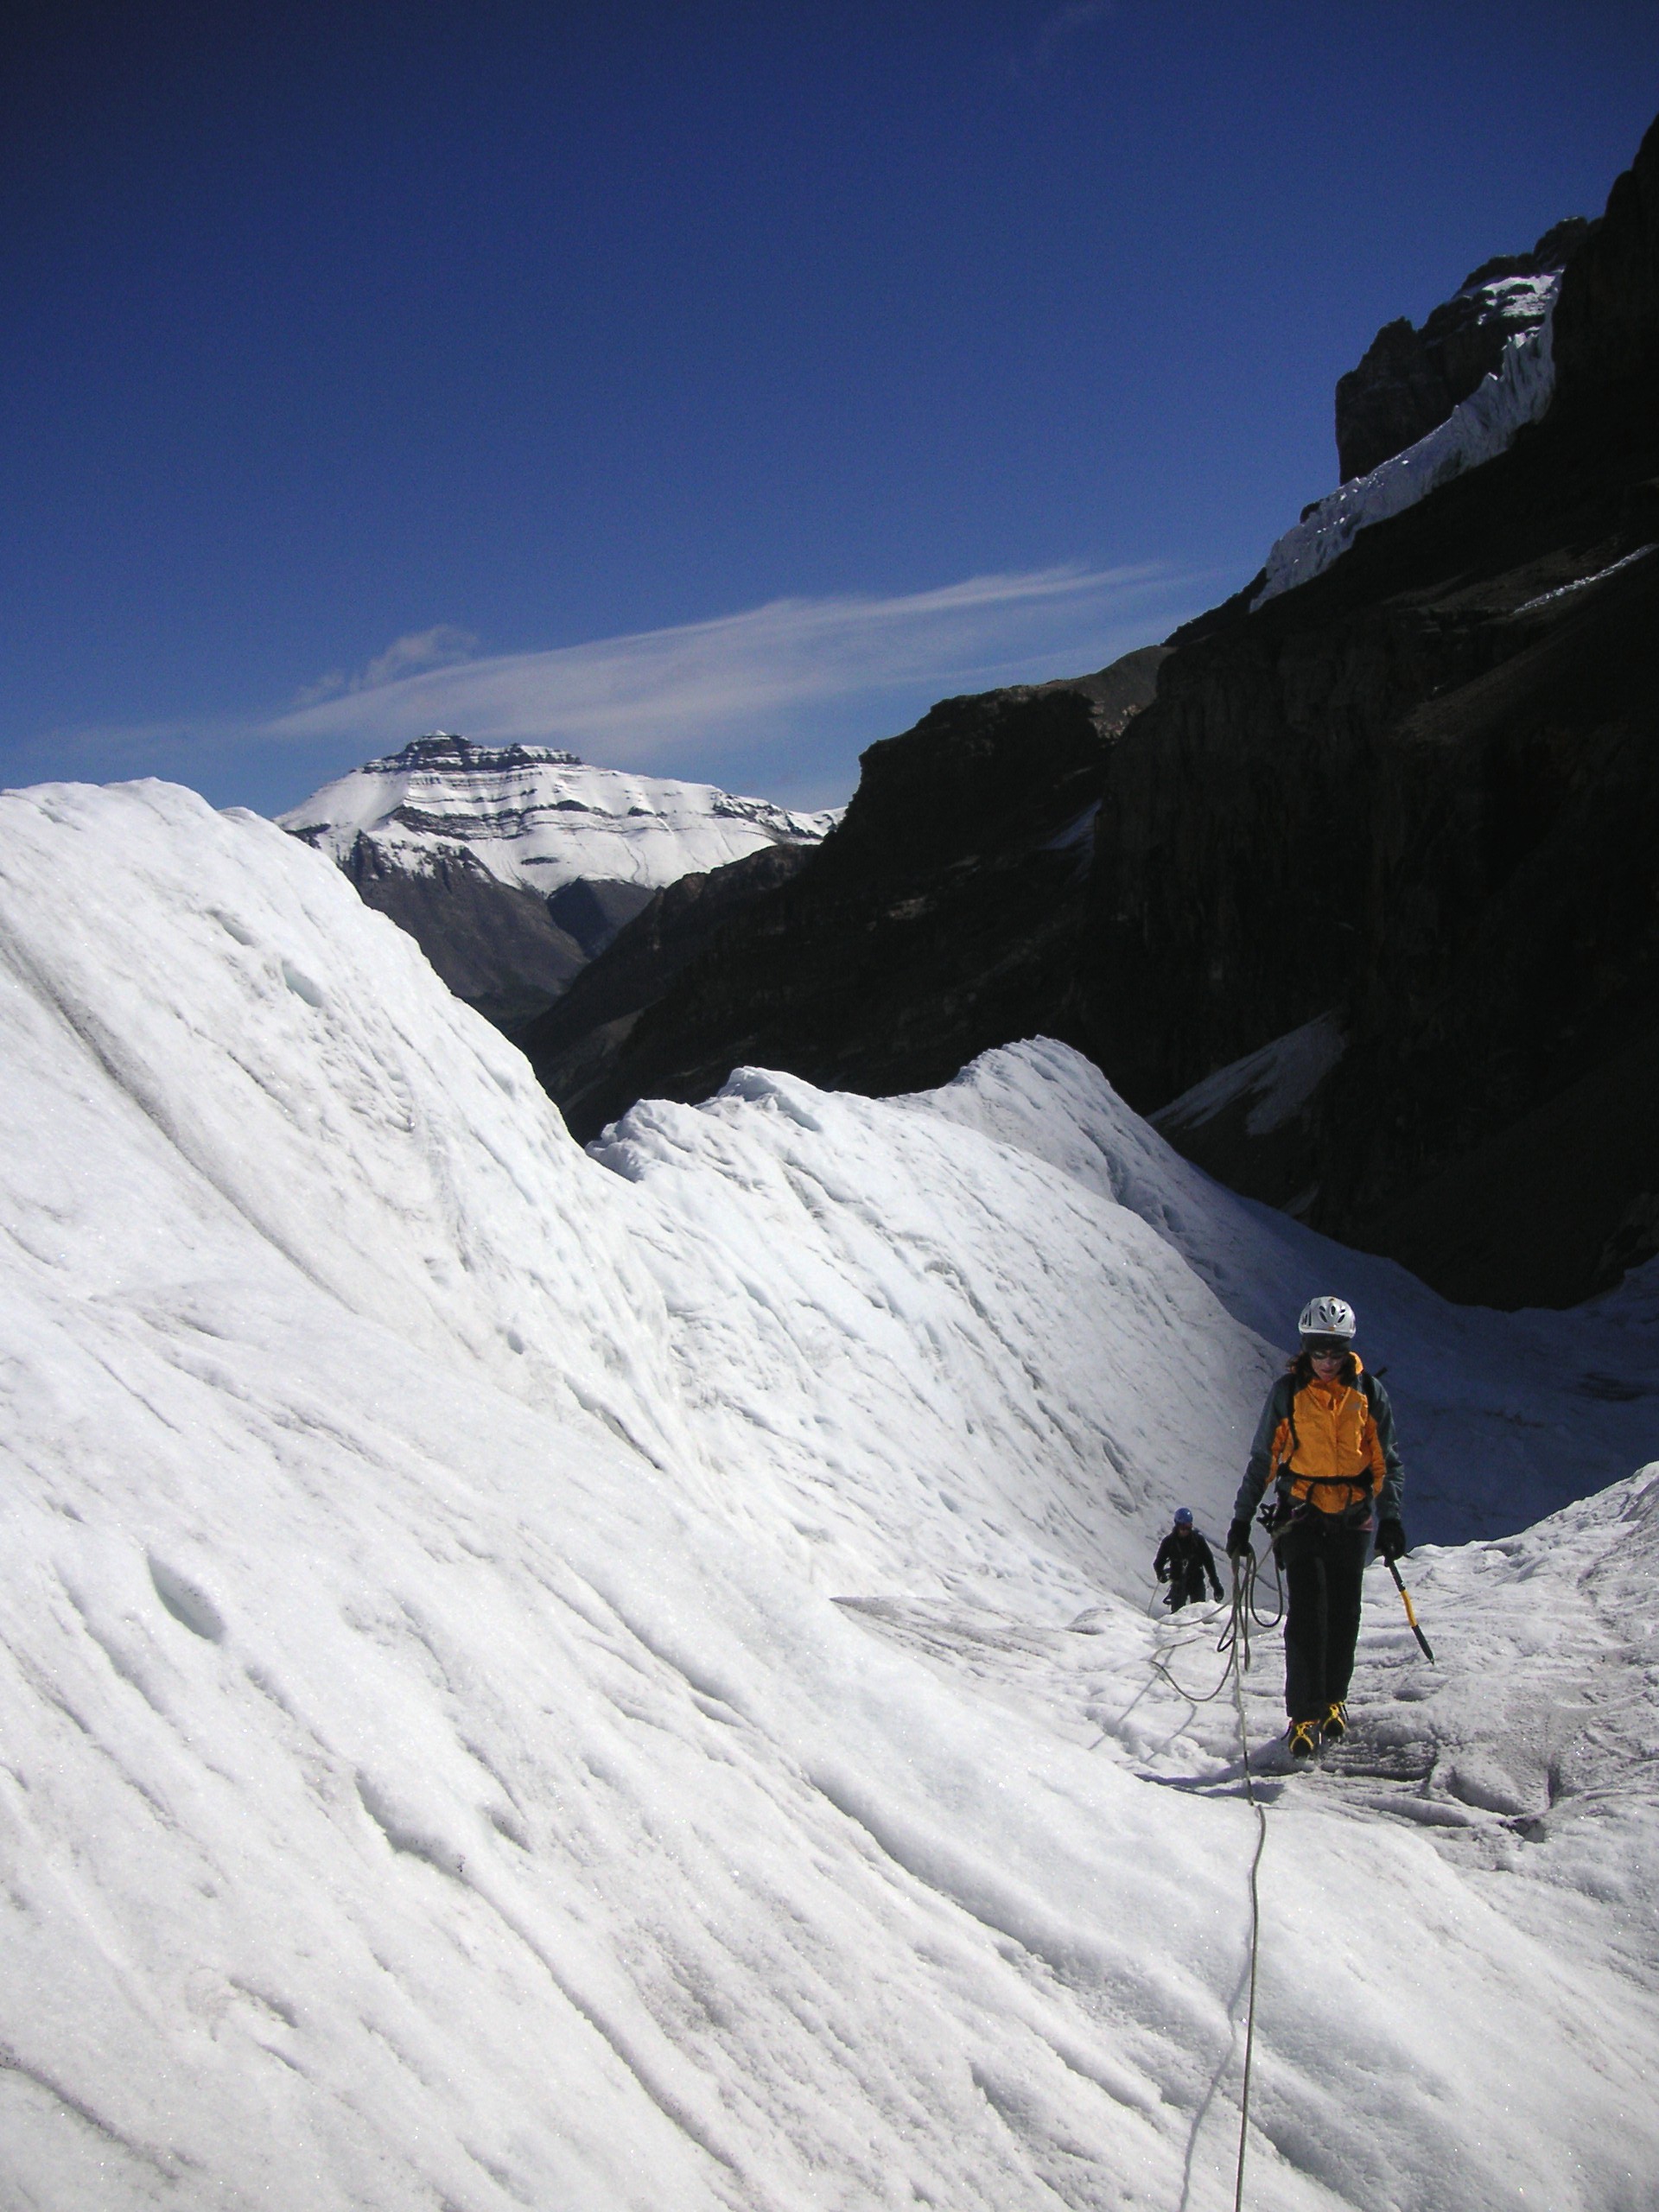 Legati su ghiacciaio: consigli pratici per gli scialpinisti di primavera